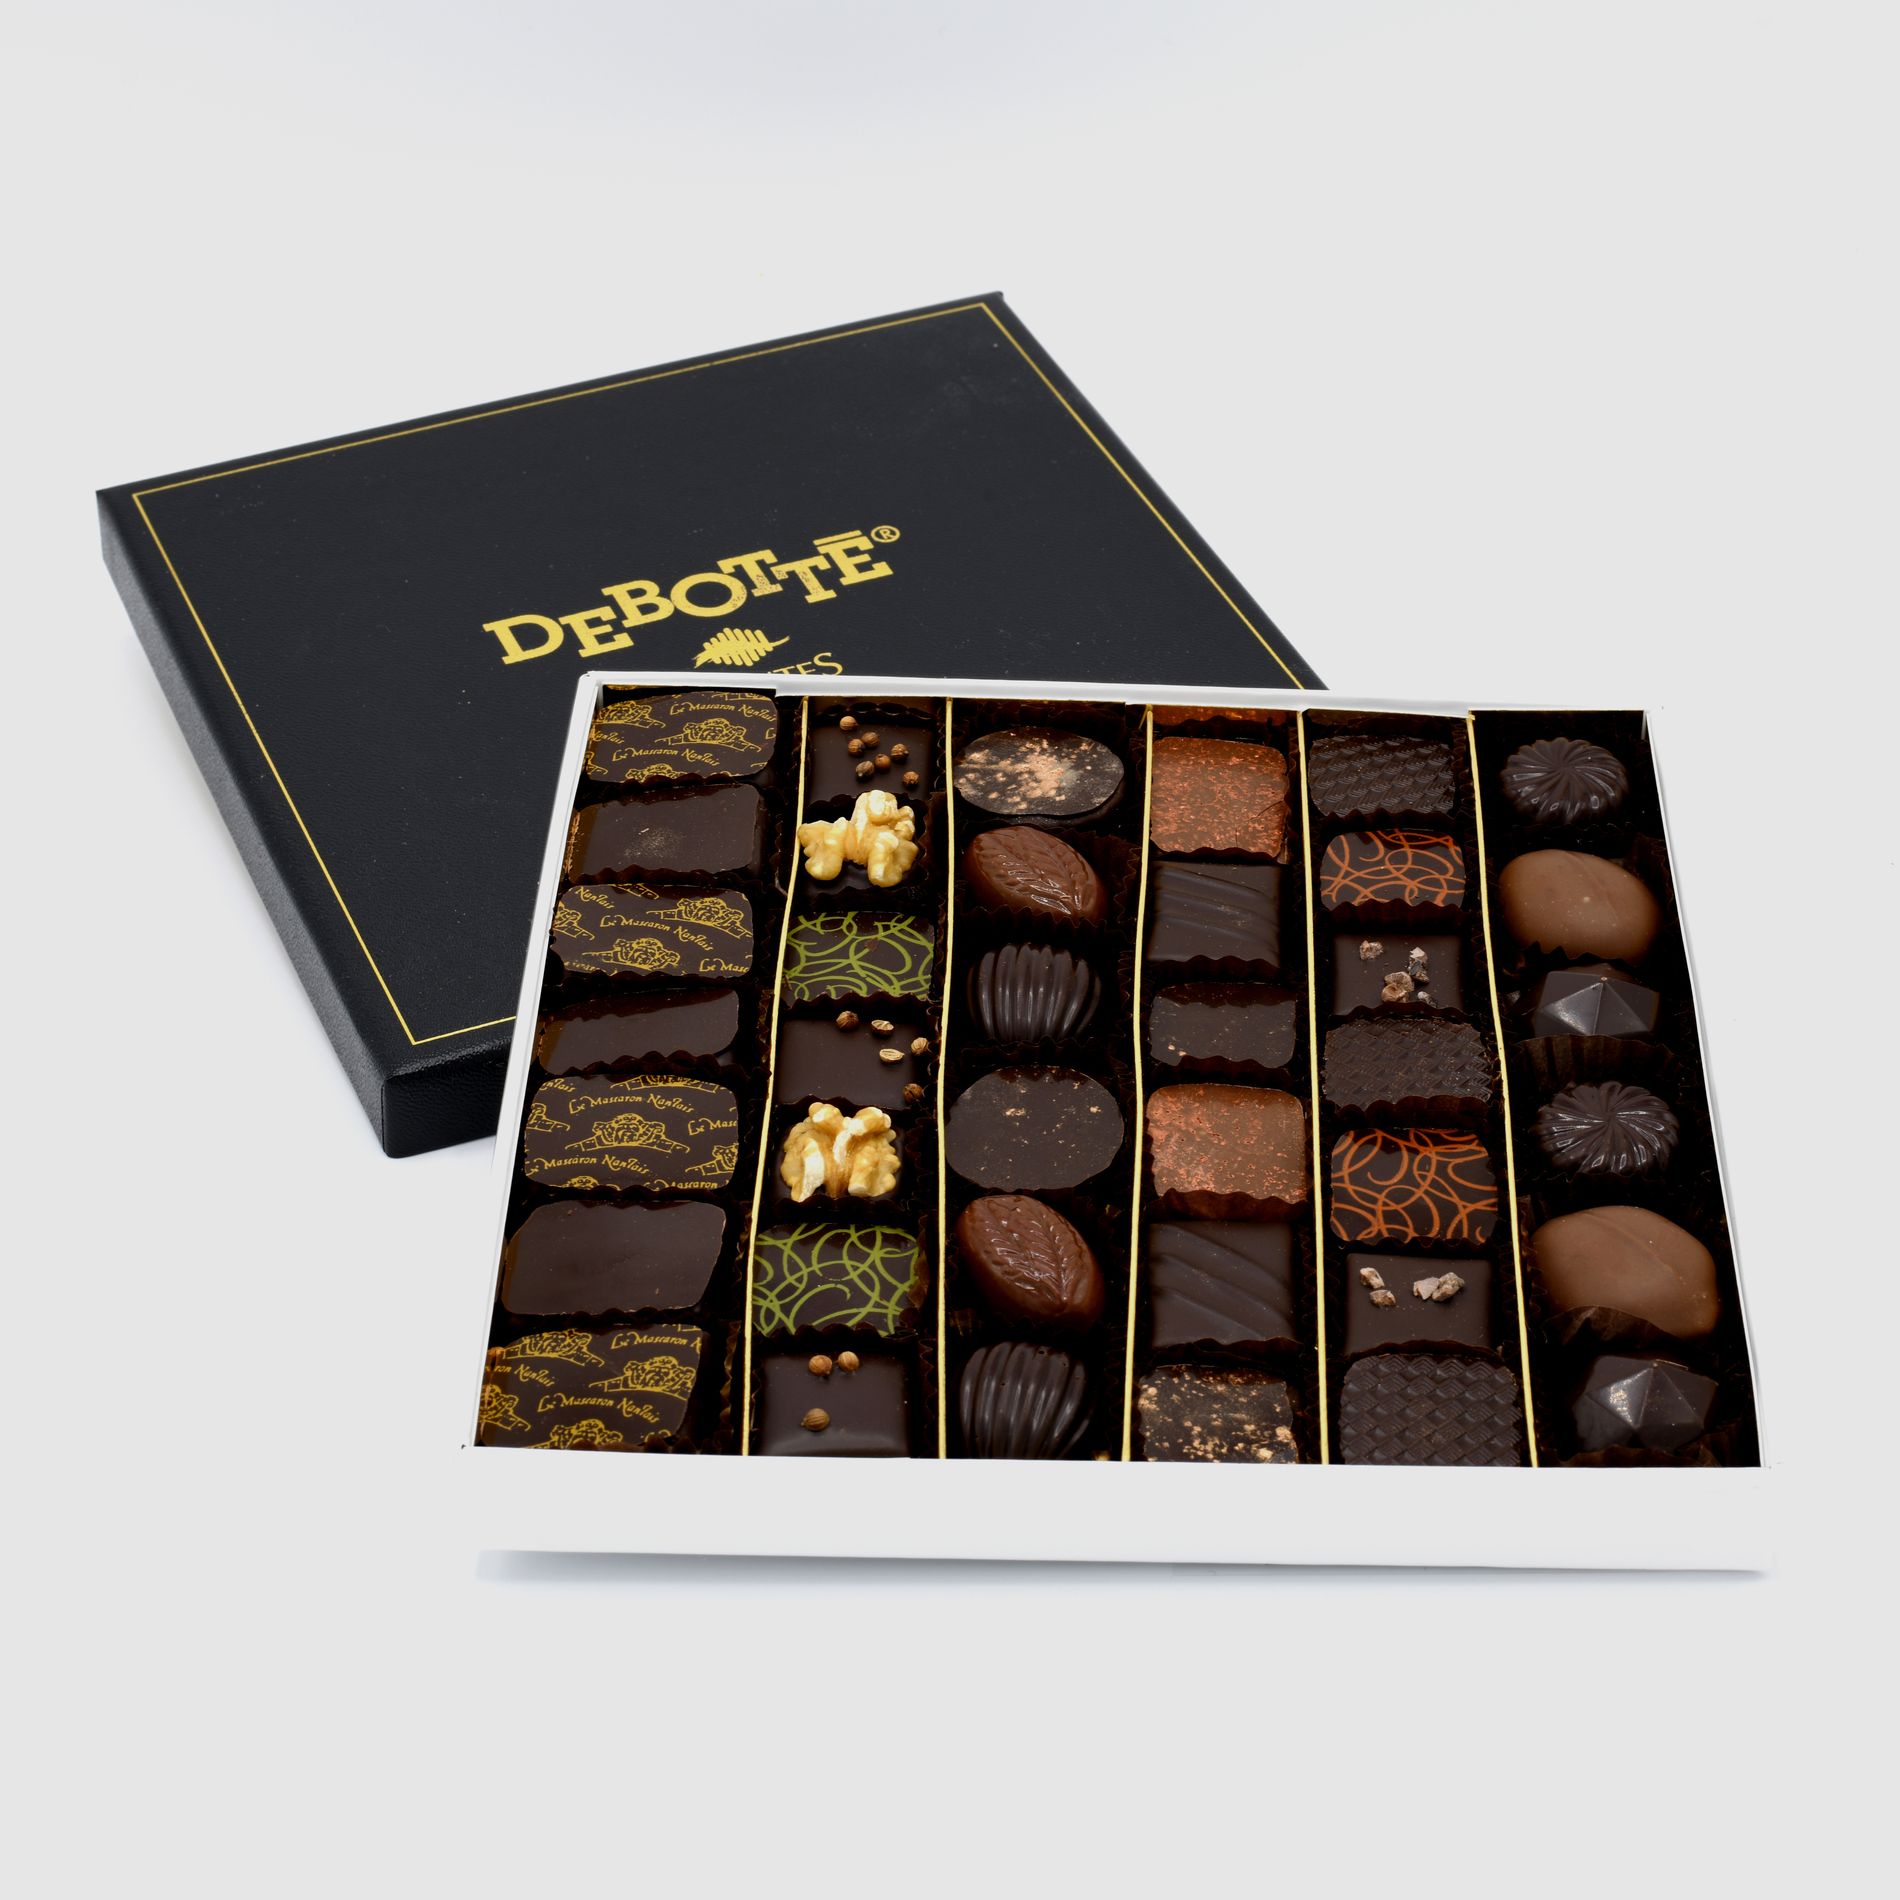 Coffret cadeau chocolats Événement - Livraison Chocolats Domicile